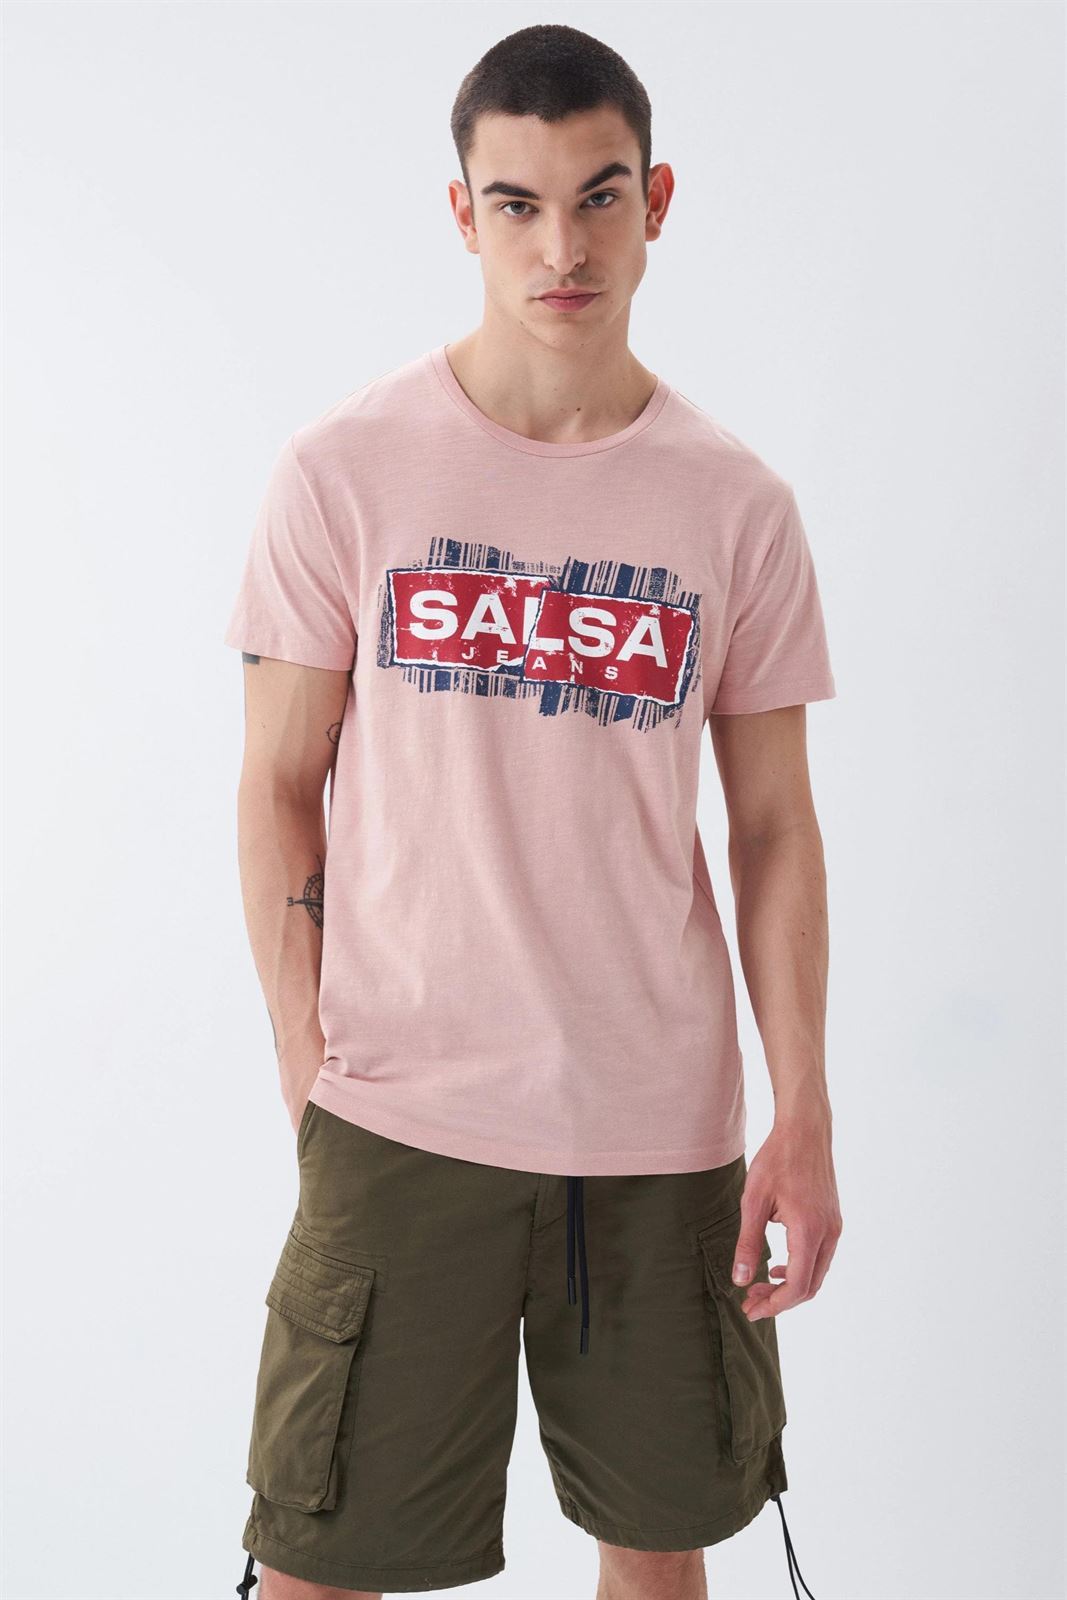 Camiseta SALSA 126291 6201 ROSA - Imagen 1